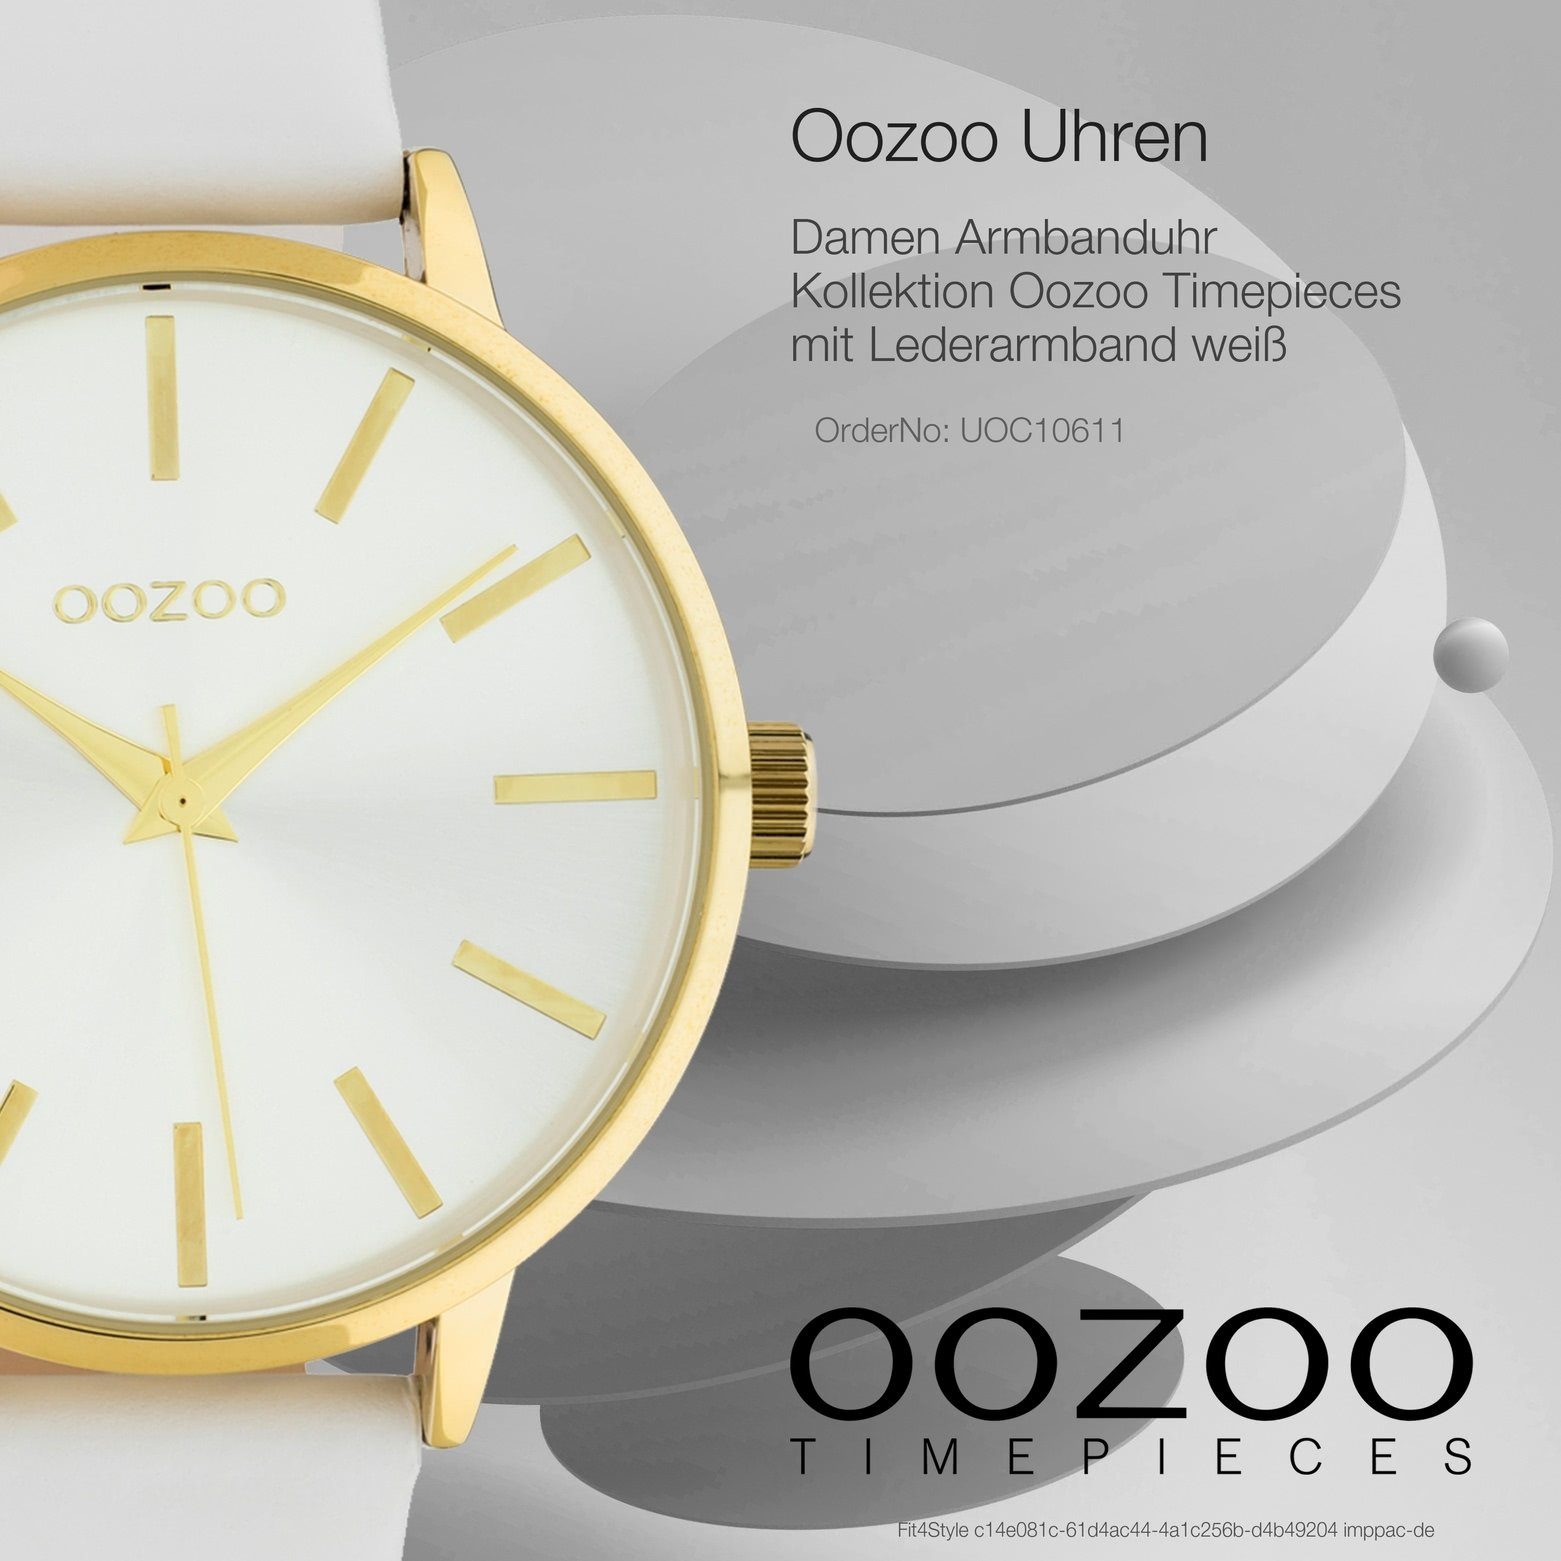 OOZOO Quarzuhr Oozoo Lederarmband, weiß groß rund, 42mm) Damenuhr Fashion-Style Damen (ca. C10611, Analog Armbanduhr